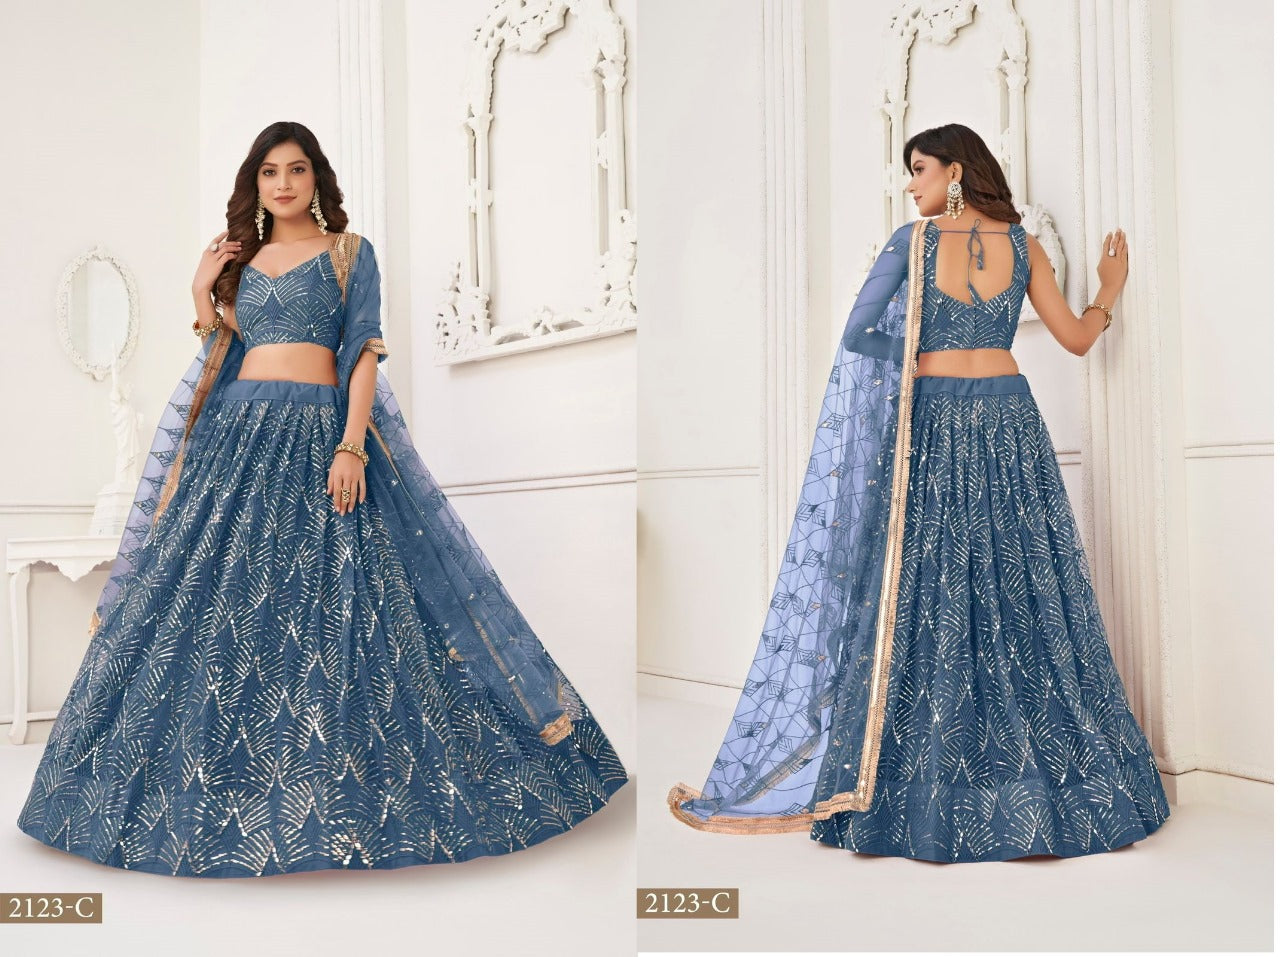 Indian Clothing Online - Sarees, Lehenga Choli, Dupatta — The Indian  Fashion House